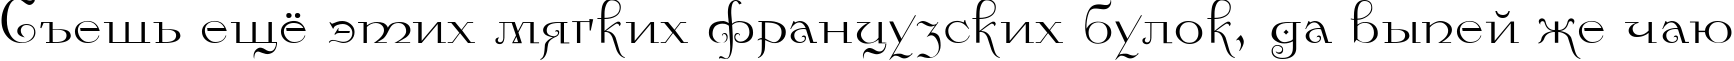 Пример написания шрифтом Kamelia текста на русском